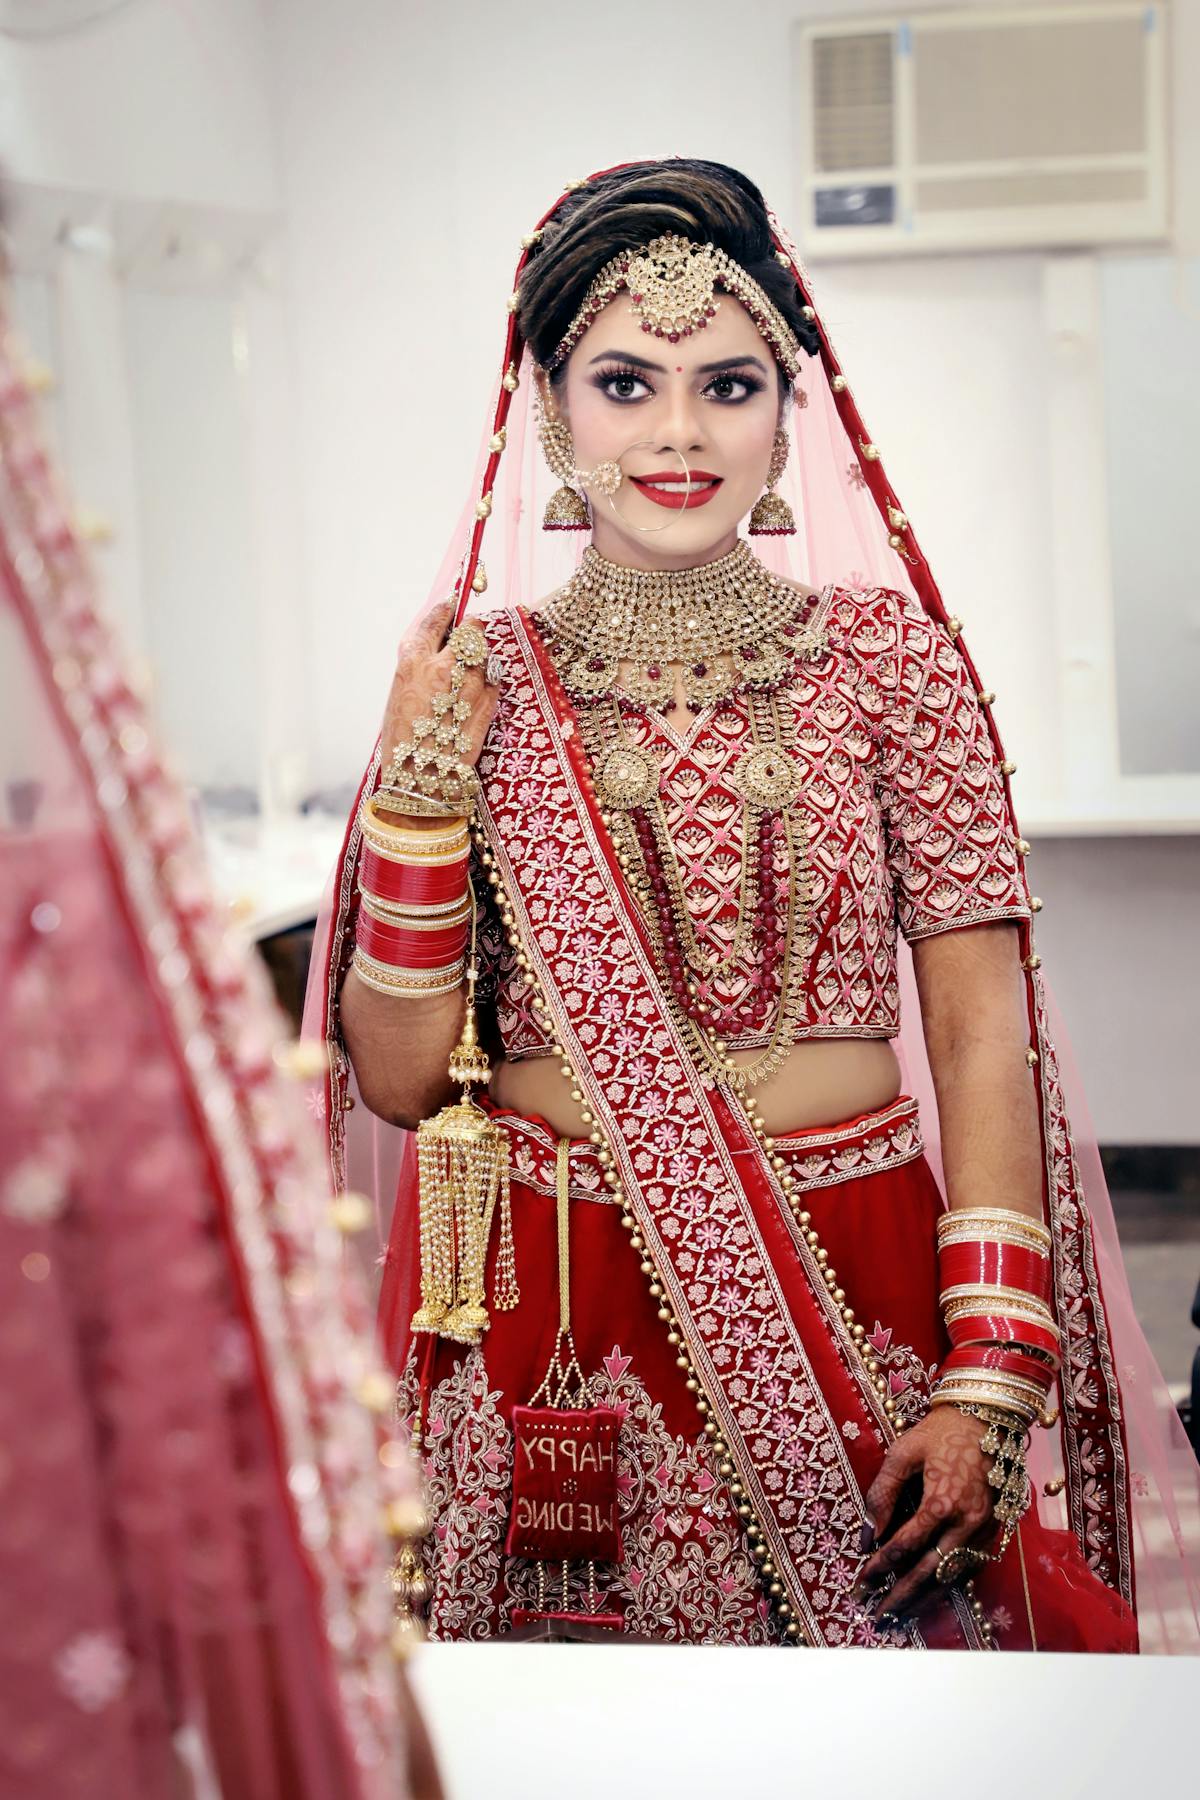 尼泊尔新娘和新郎在婚礼，印度婚礼 图库摄影片. 图片 包括有 装饰, 文化, 珠宝, 尼泊尔, 礼服, 宗教信仰 - 124353412